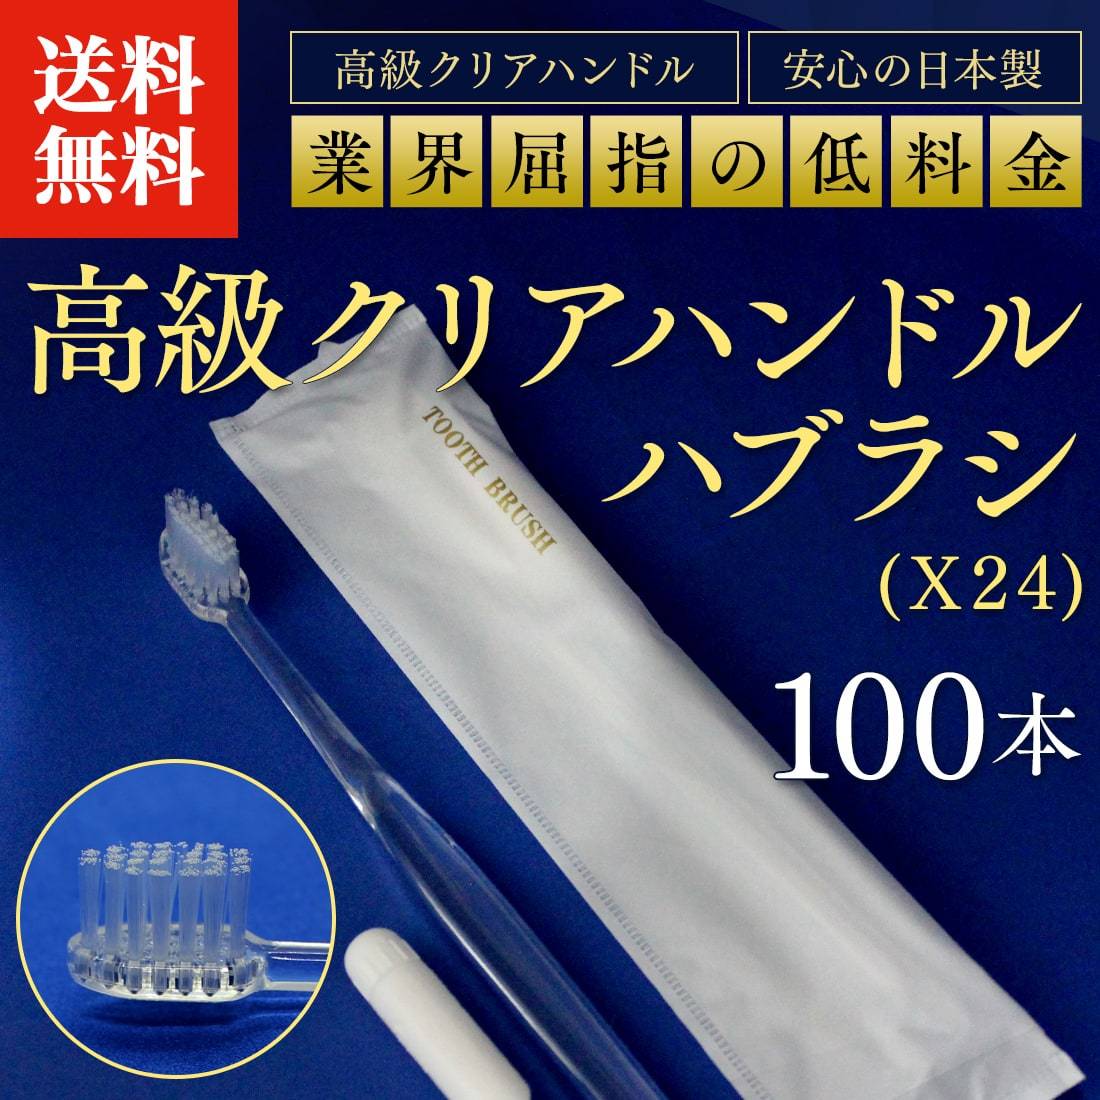 人気新品入荷 歯ブラシ 100本 使い捨て歯ブラシセット 歯磨き粉チューブ付き